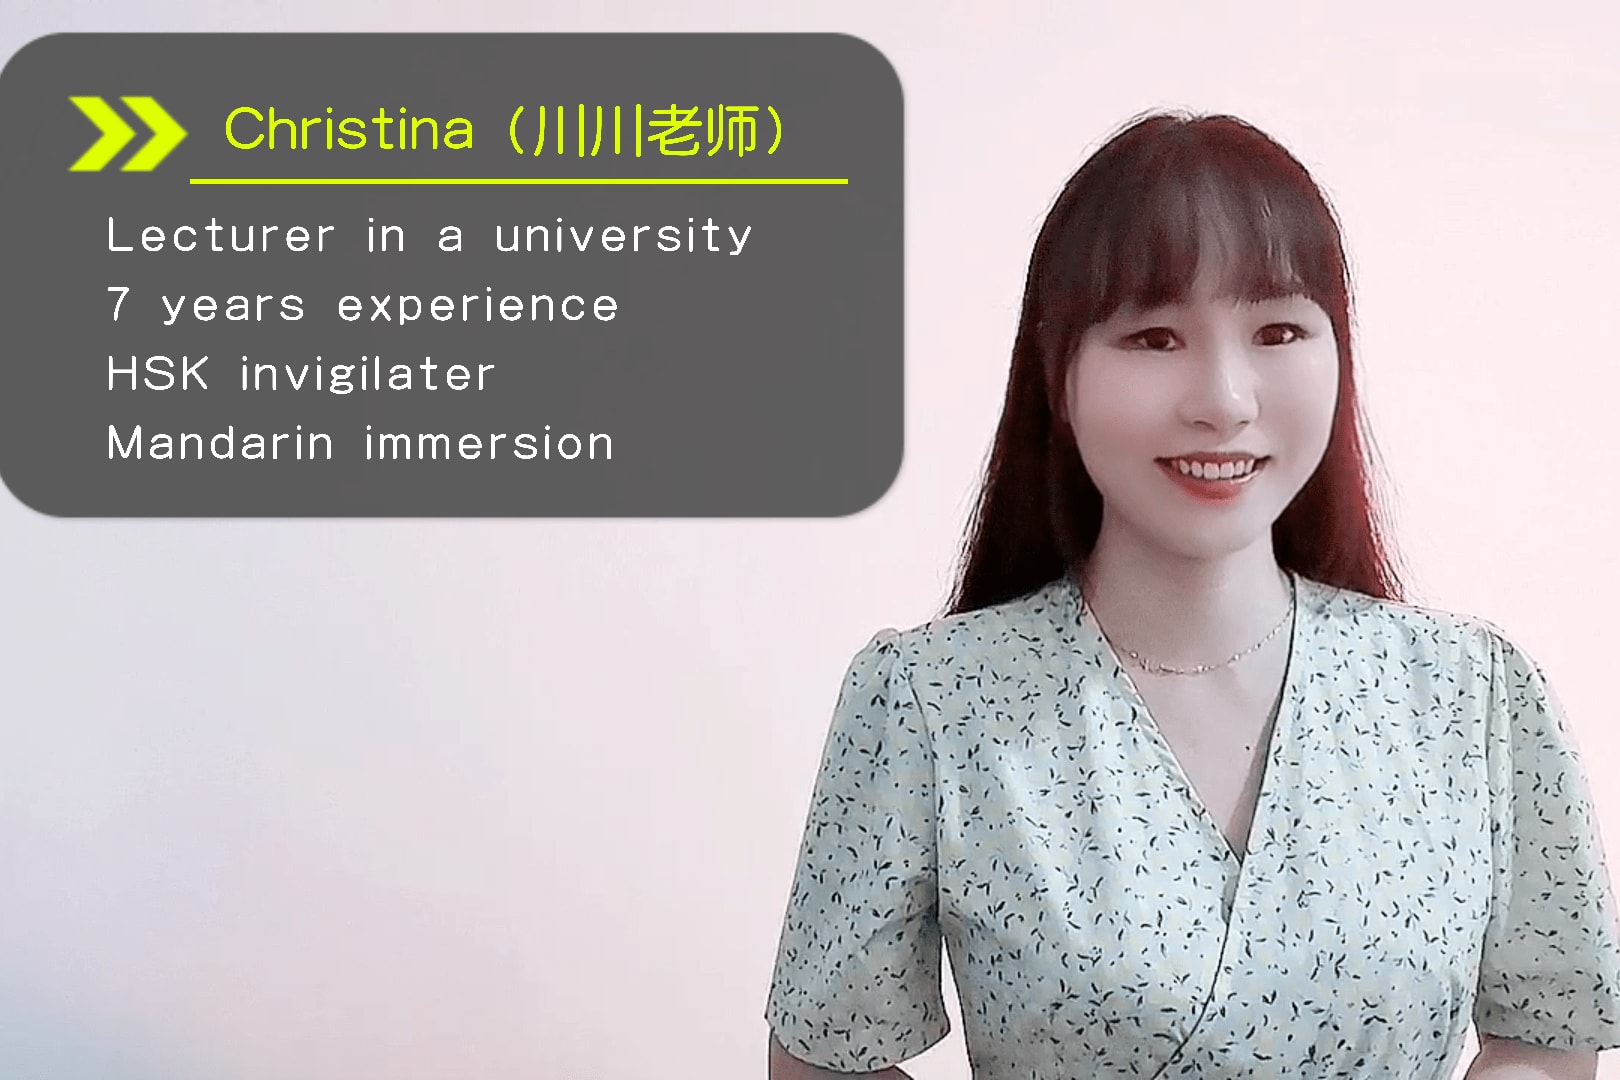 Portfolio for Chinese Mandarin tutor|Uni lectur|7 ys